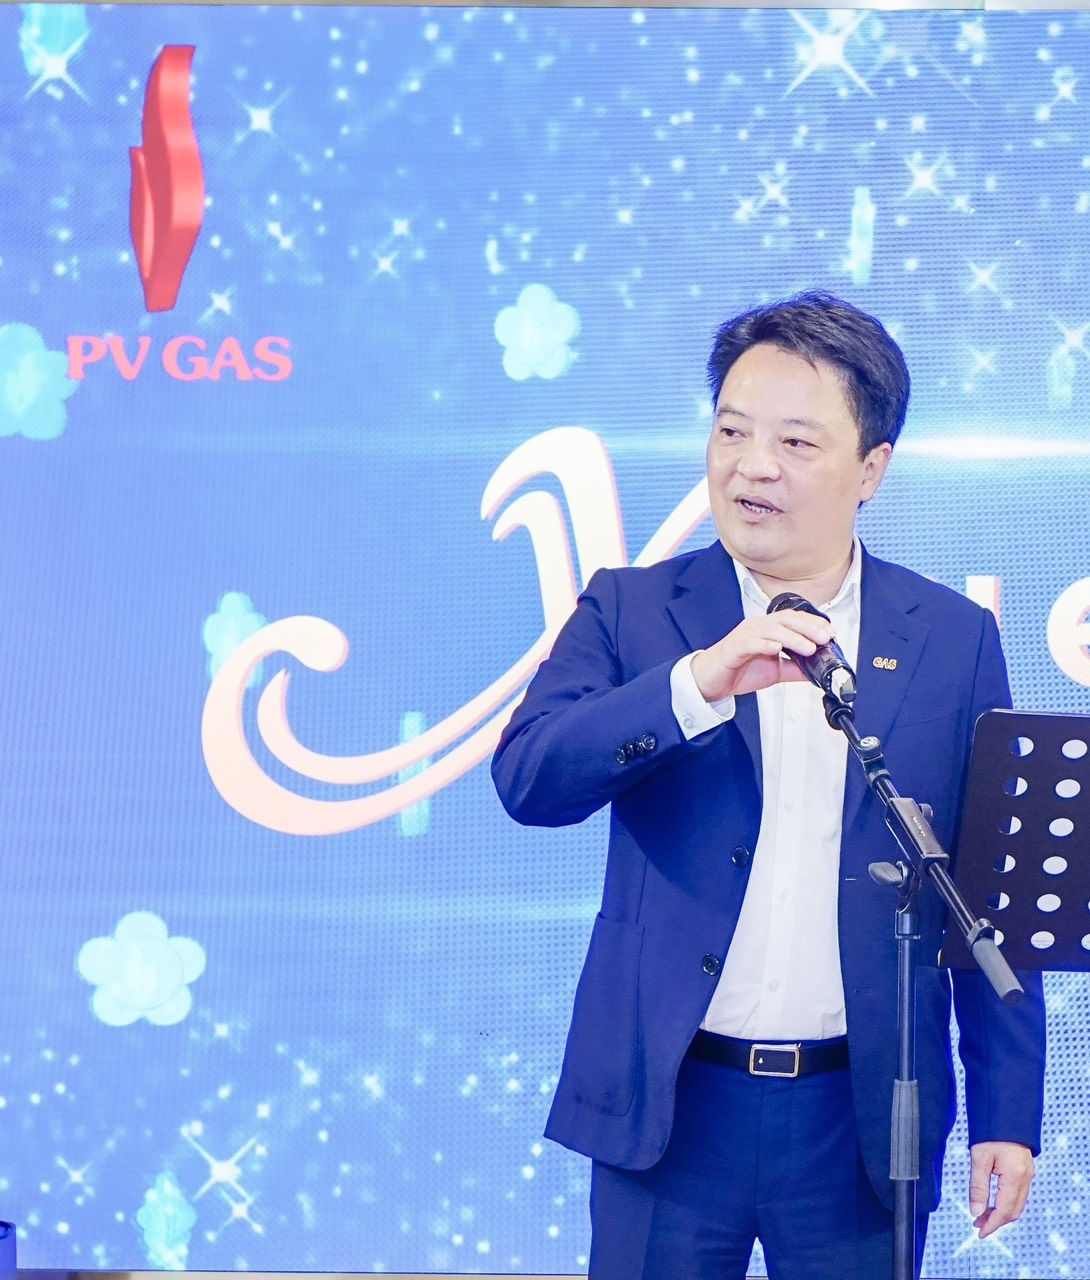 đồng chí Hoàng Văn Quang –Phó Bí thư Đảng ủy, Thành viên HĐQT, Tổng giám đốc PV GAS